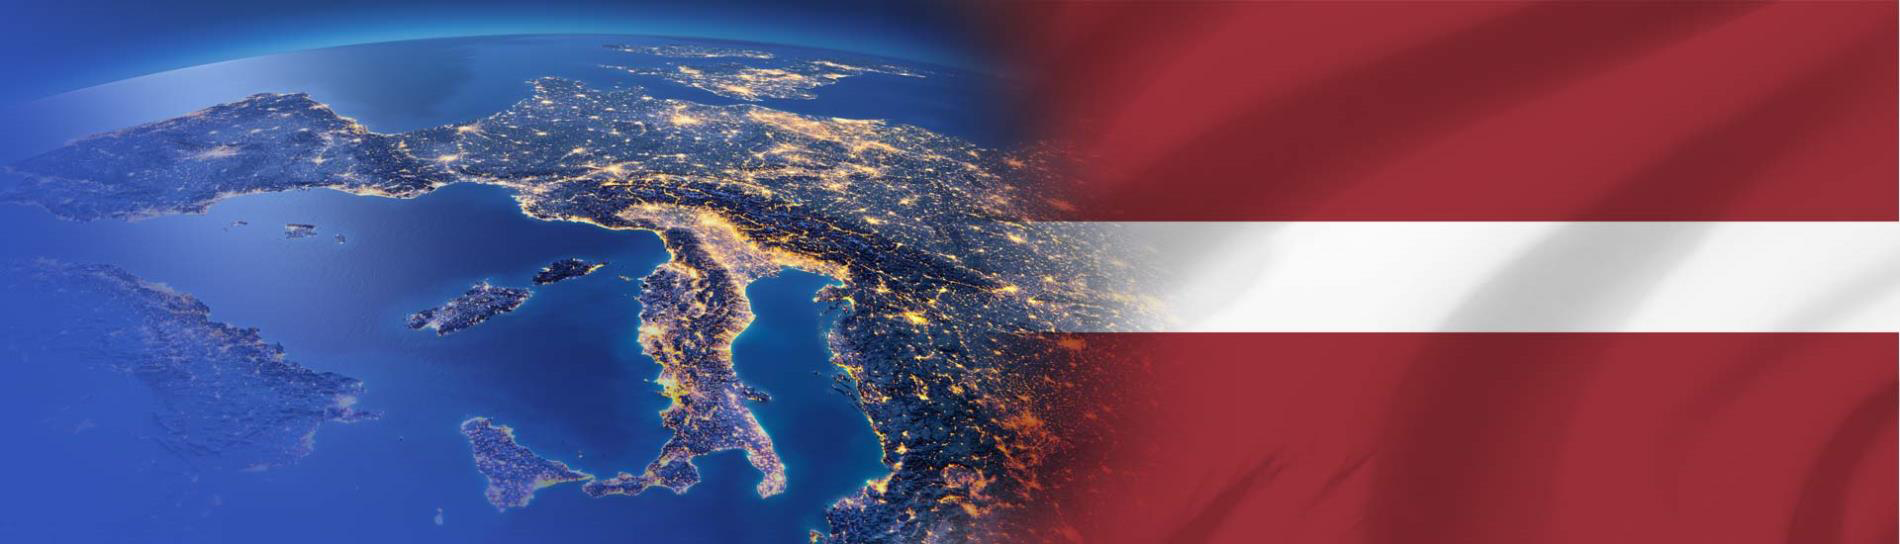 Latvijos vėliava europos žemyne